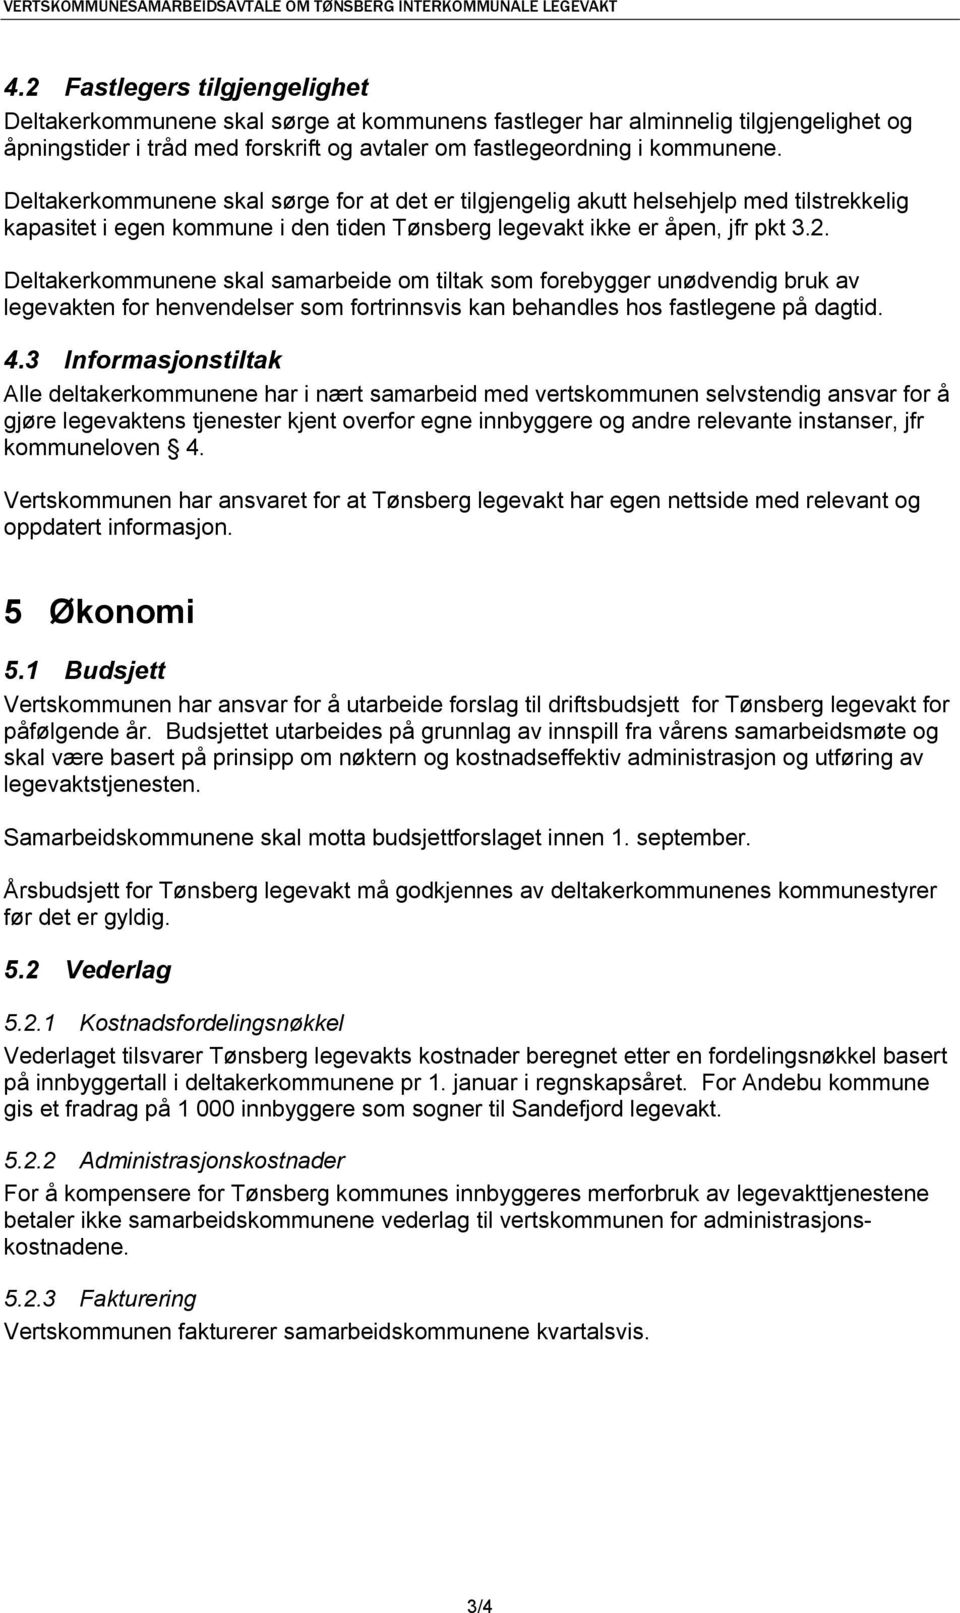 Deltakerkommunene skal sørge for at det er tilgjengelig akutt helsehjelp med tilstrekkelig kapasitet i egen kommune i den tiden Tønsberg legevakt ikke er åpen, jfr pkt 3.2.